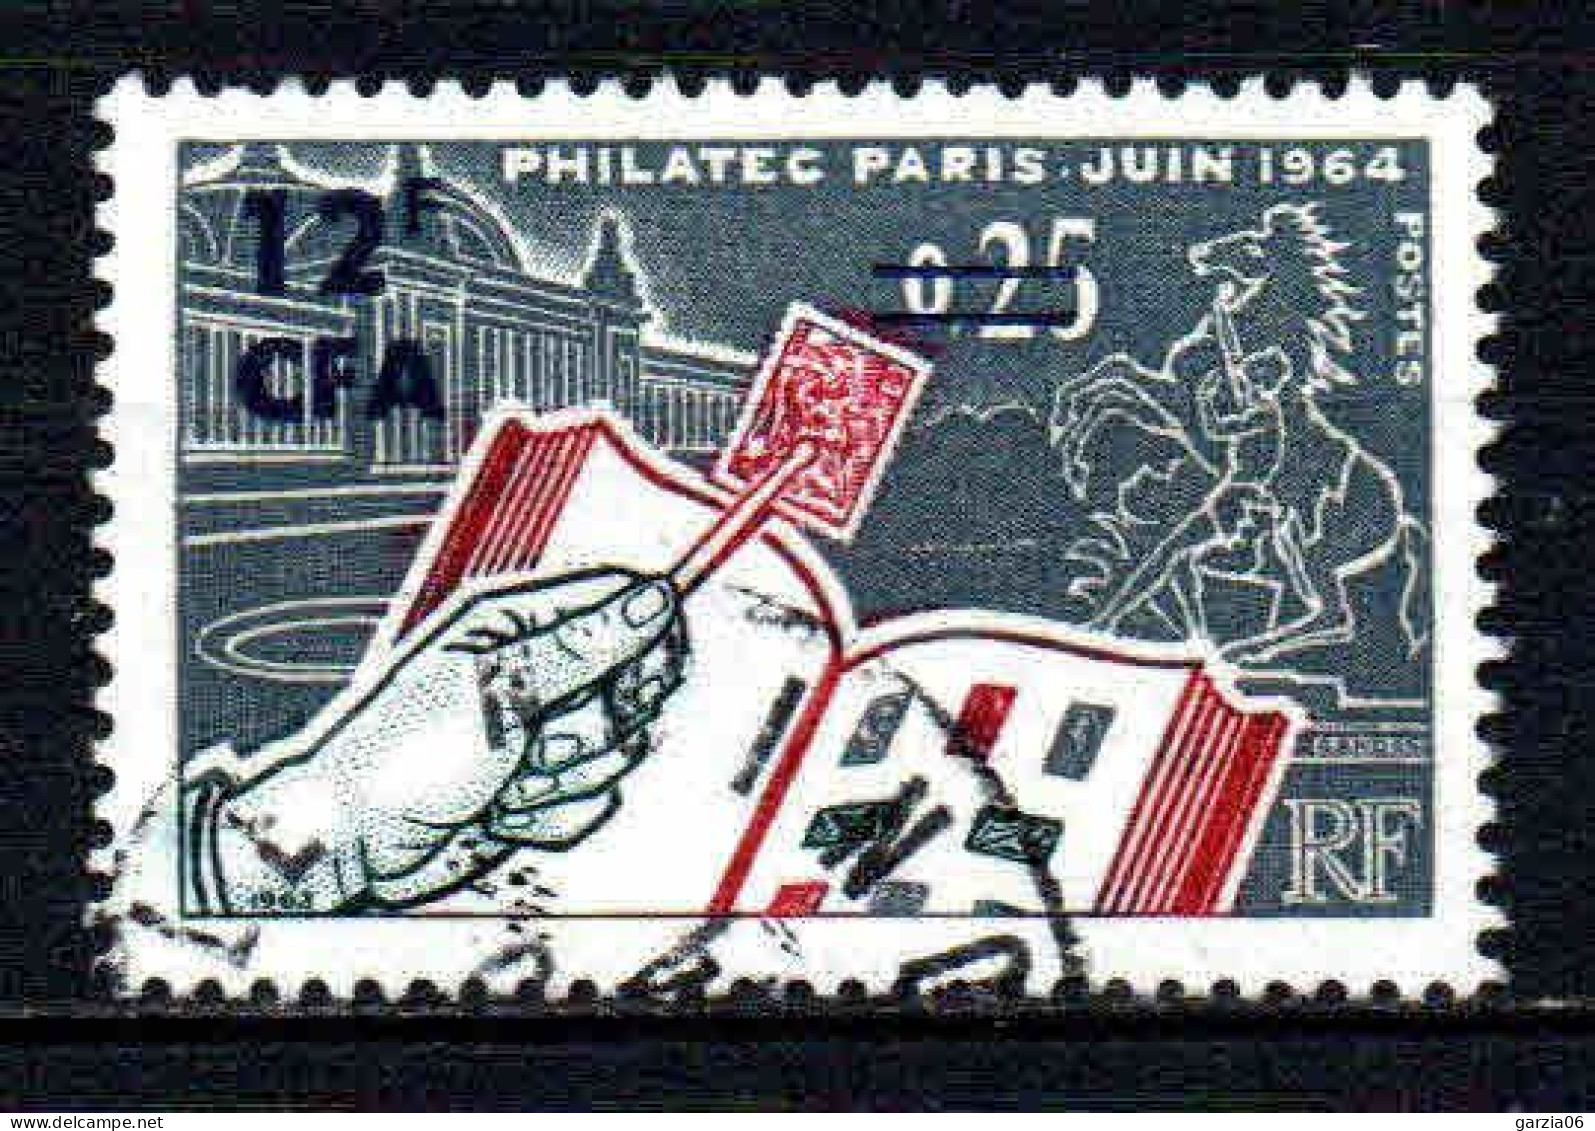 Réunion  - 1964 - Philatec - N° 359 - Oblit - Used - Usati